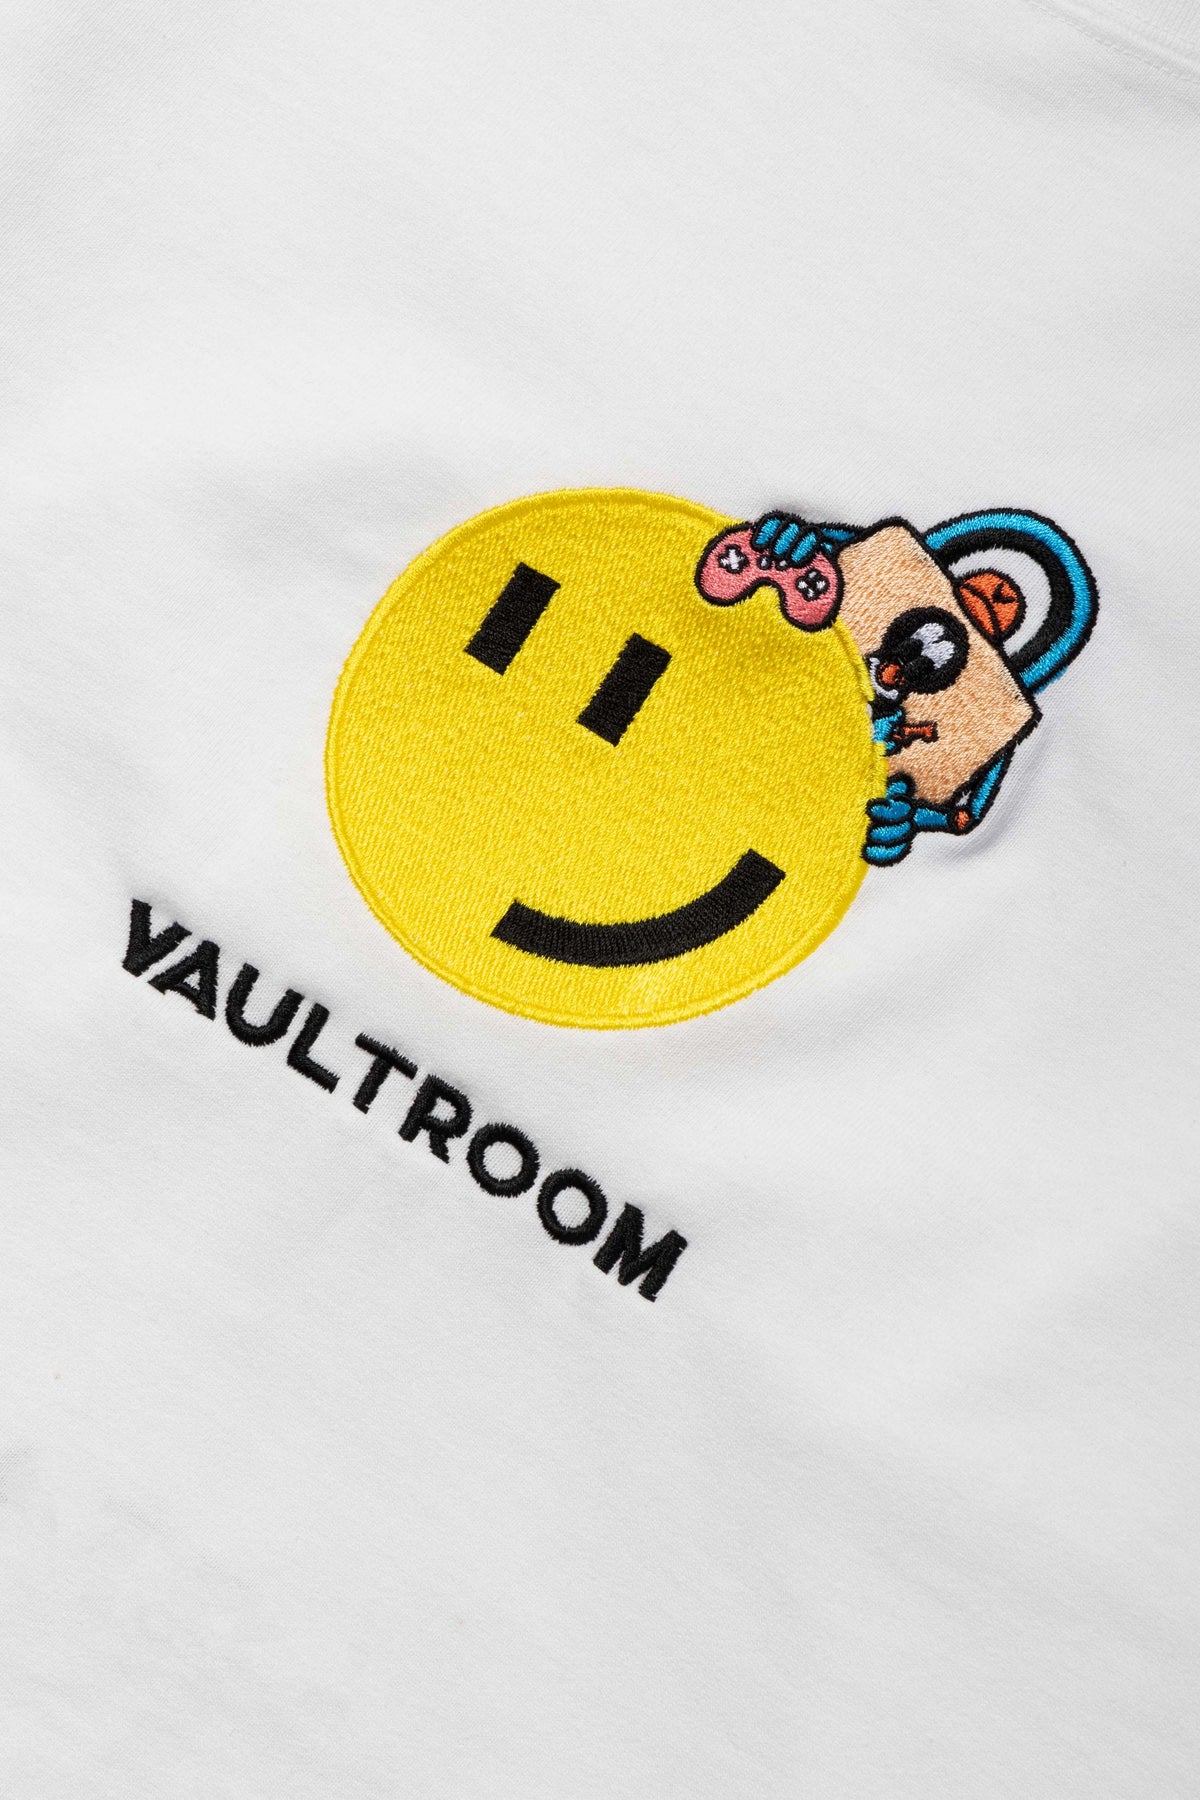 vaultroom 